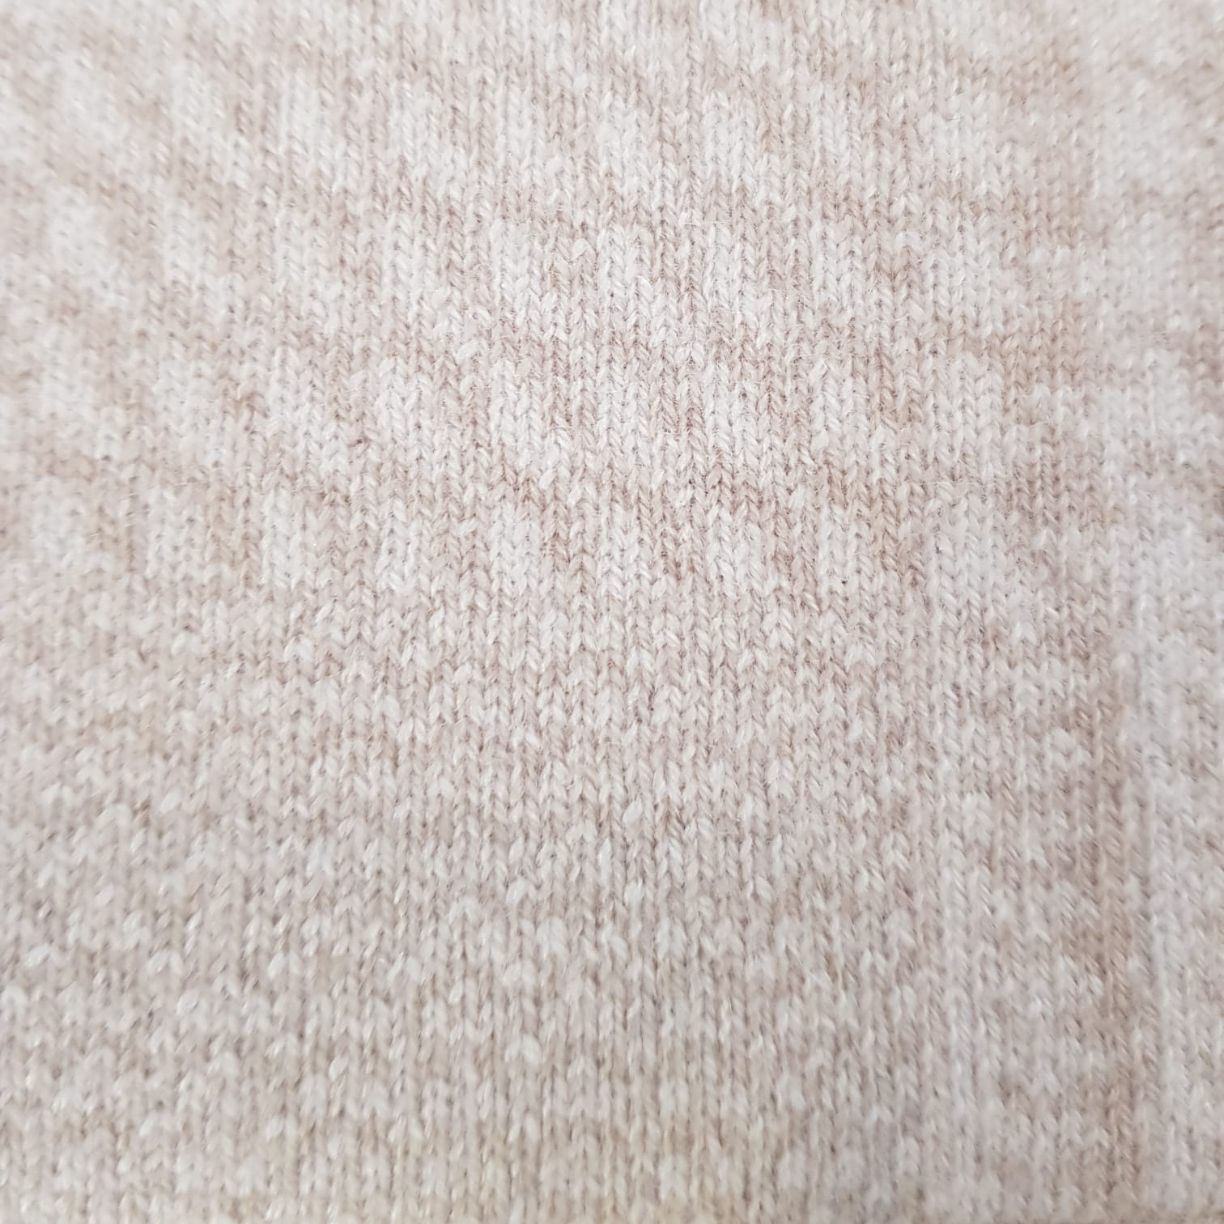 DONNA Les Boutiques - Jacket knit cashmere glencheck reversible